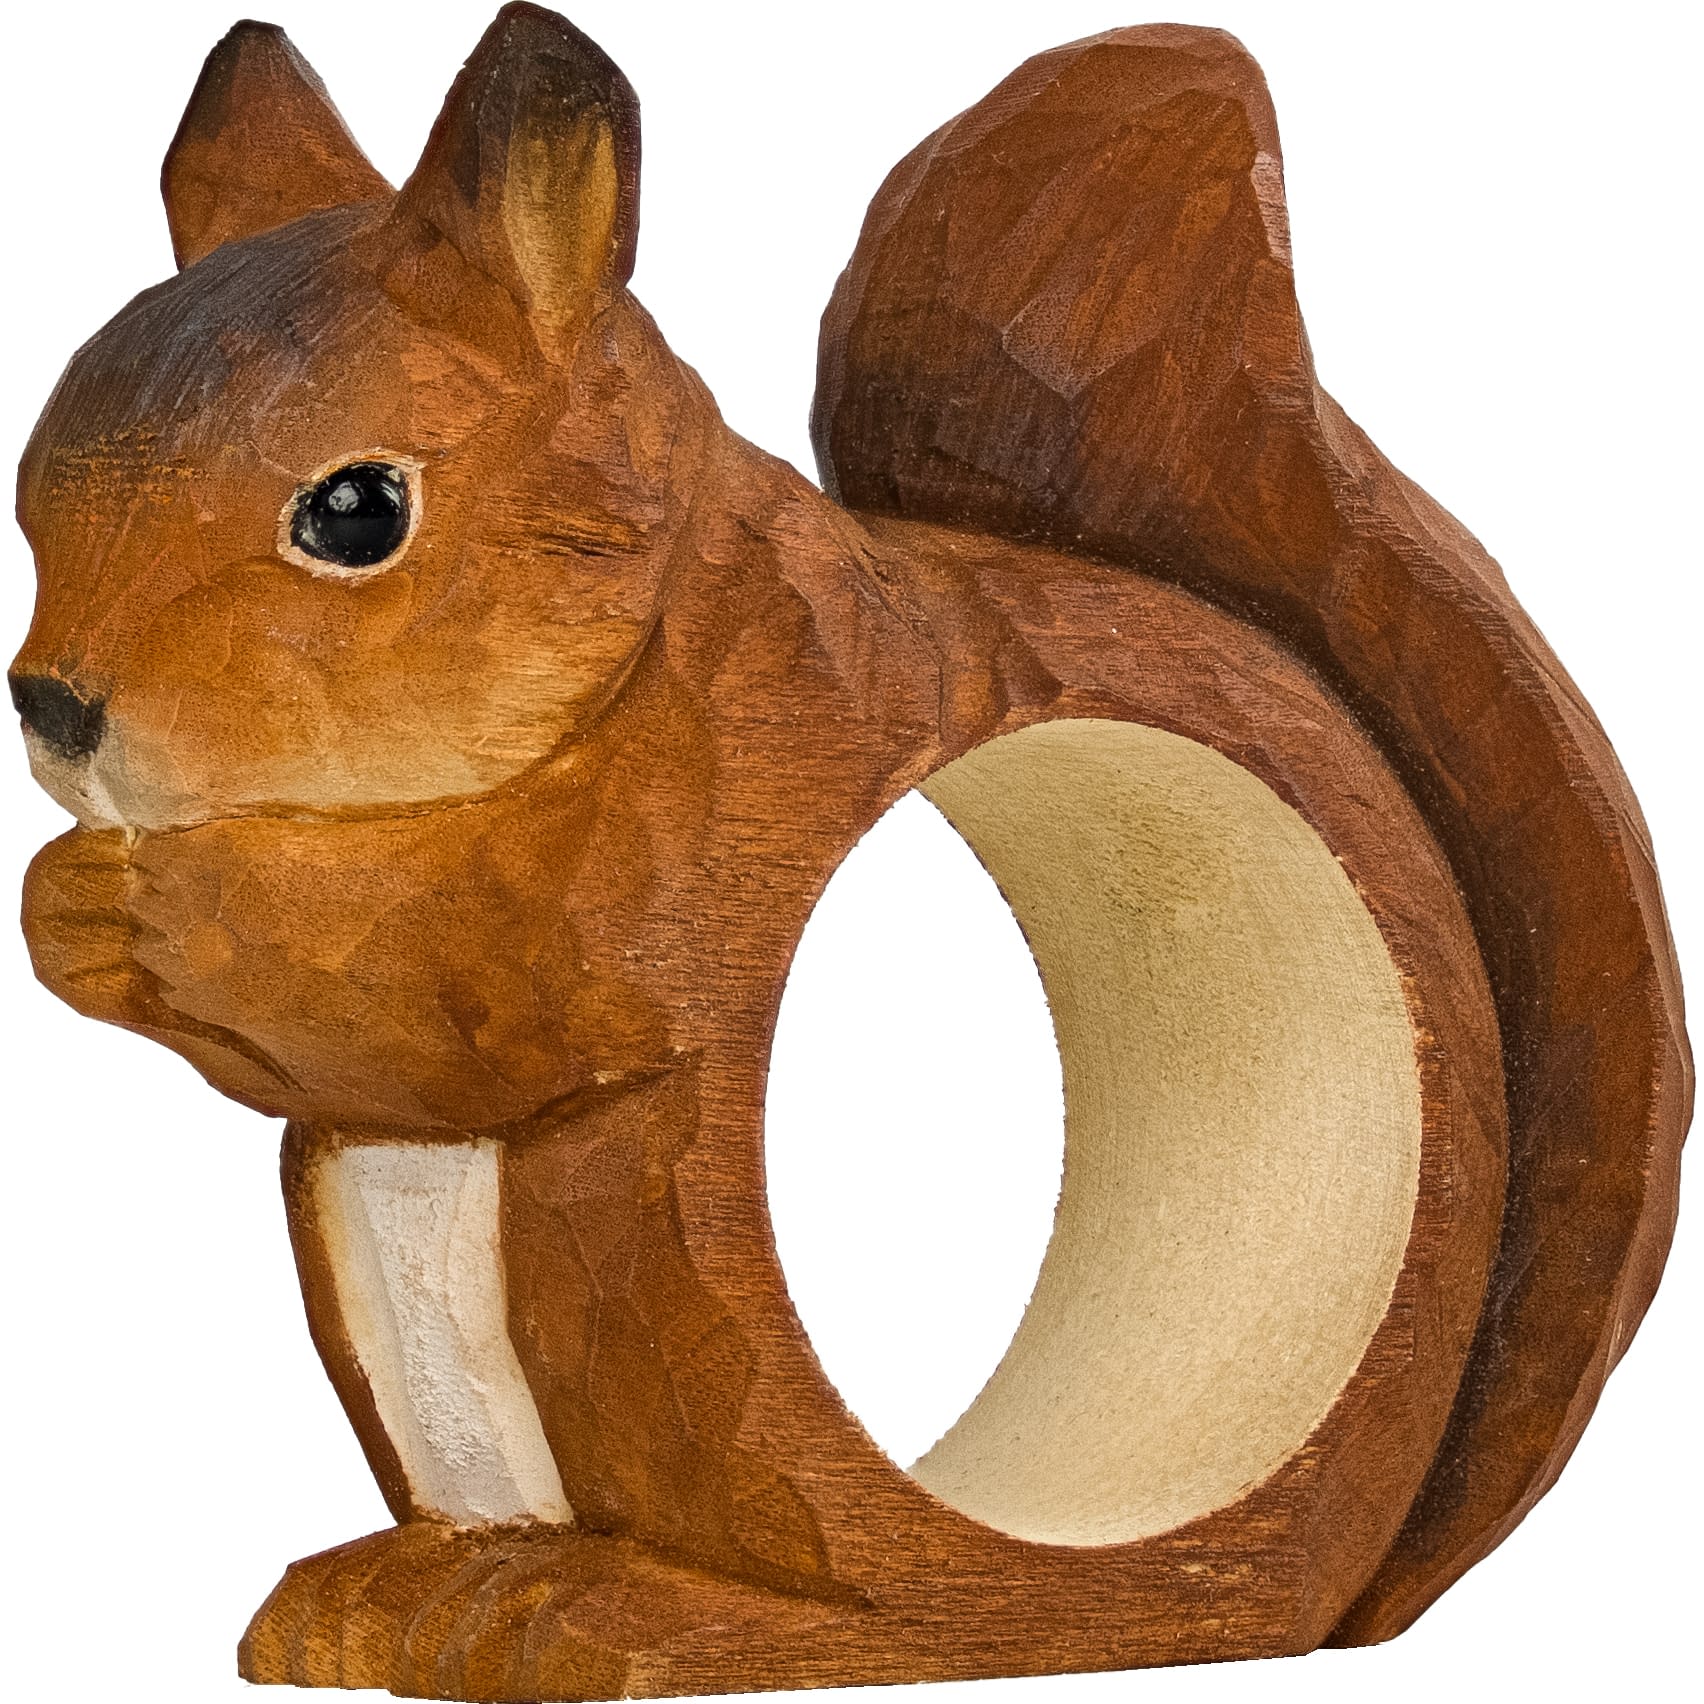 økse tyveri udvide Wildlife Garden servietring - egern | Køb den hos Karen Dagmar